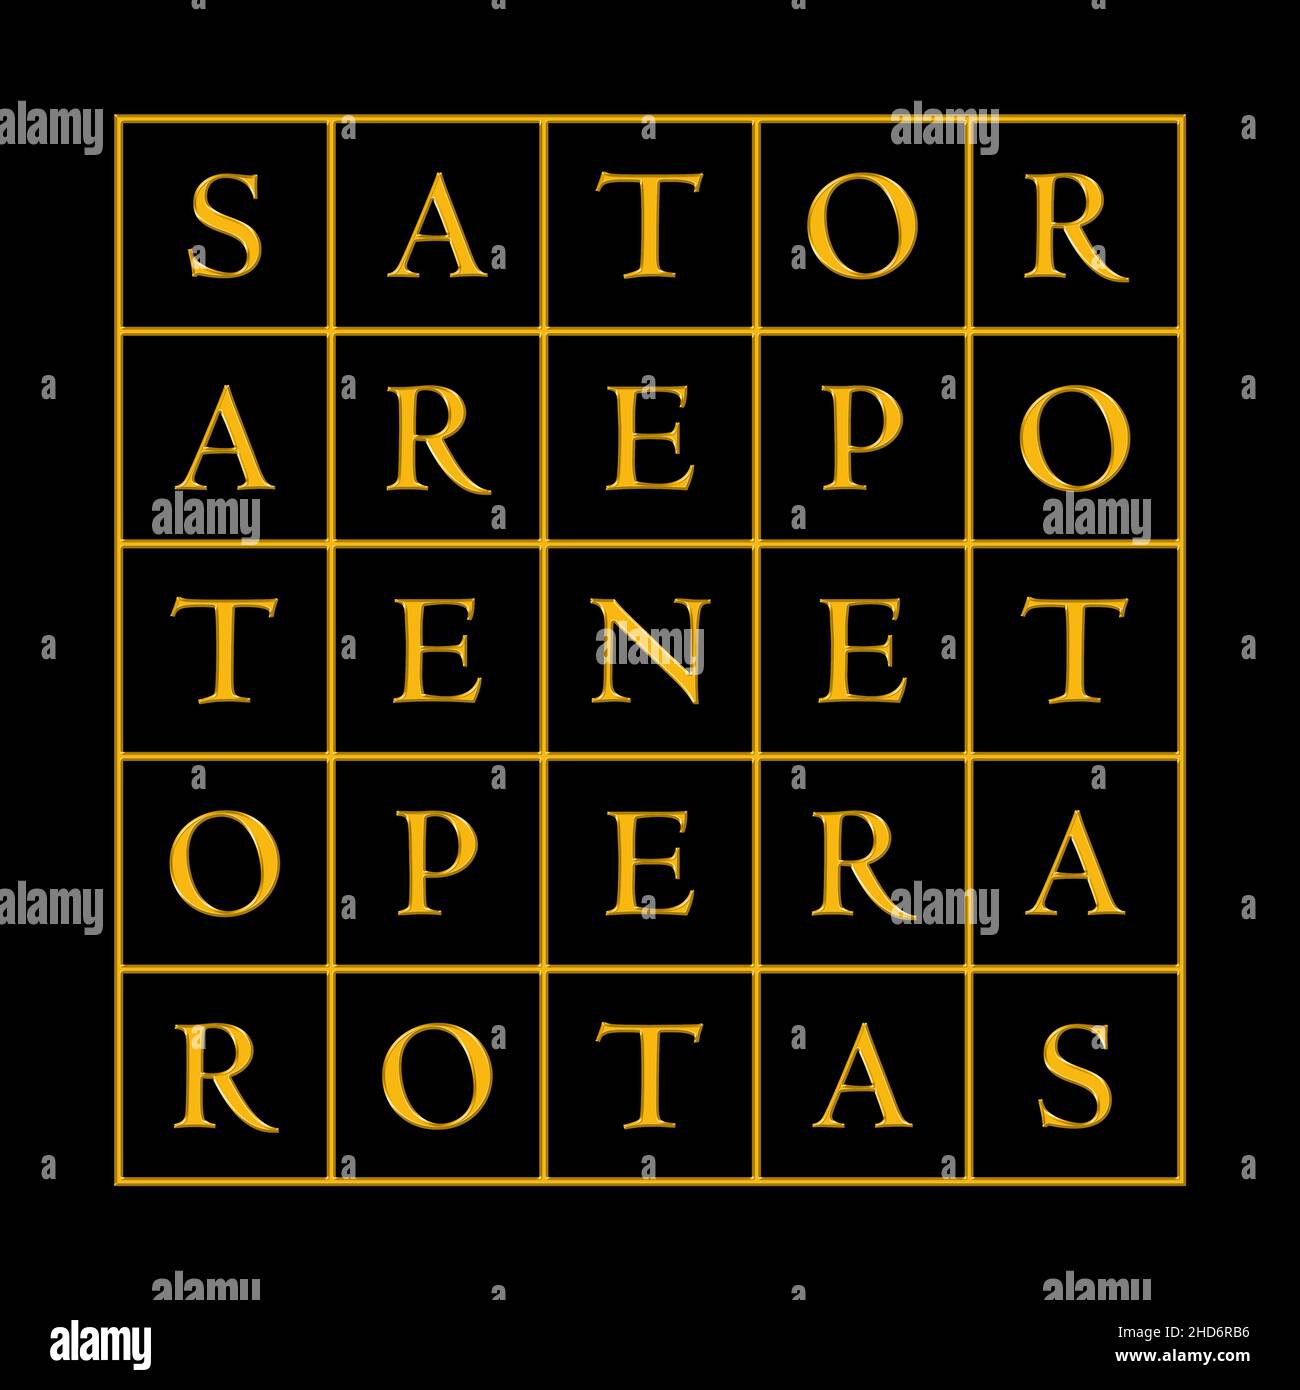 Golden Sator Square o anche Rotas Square su sfondo nero. Piazza della parola, contenente il latino palindrome Sator, Arepo, Tenet, Opera e Rotas. Foto Stock